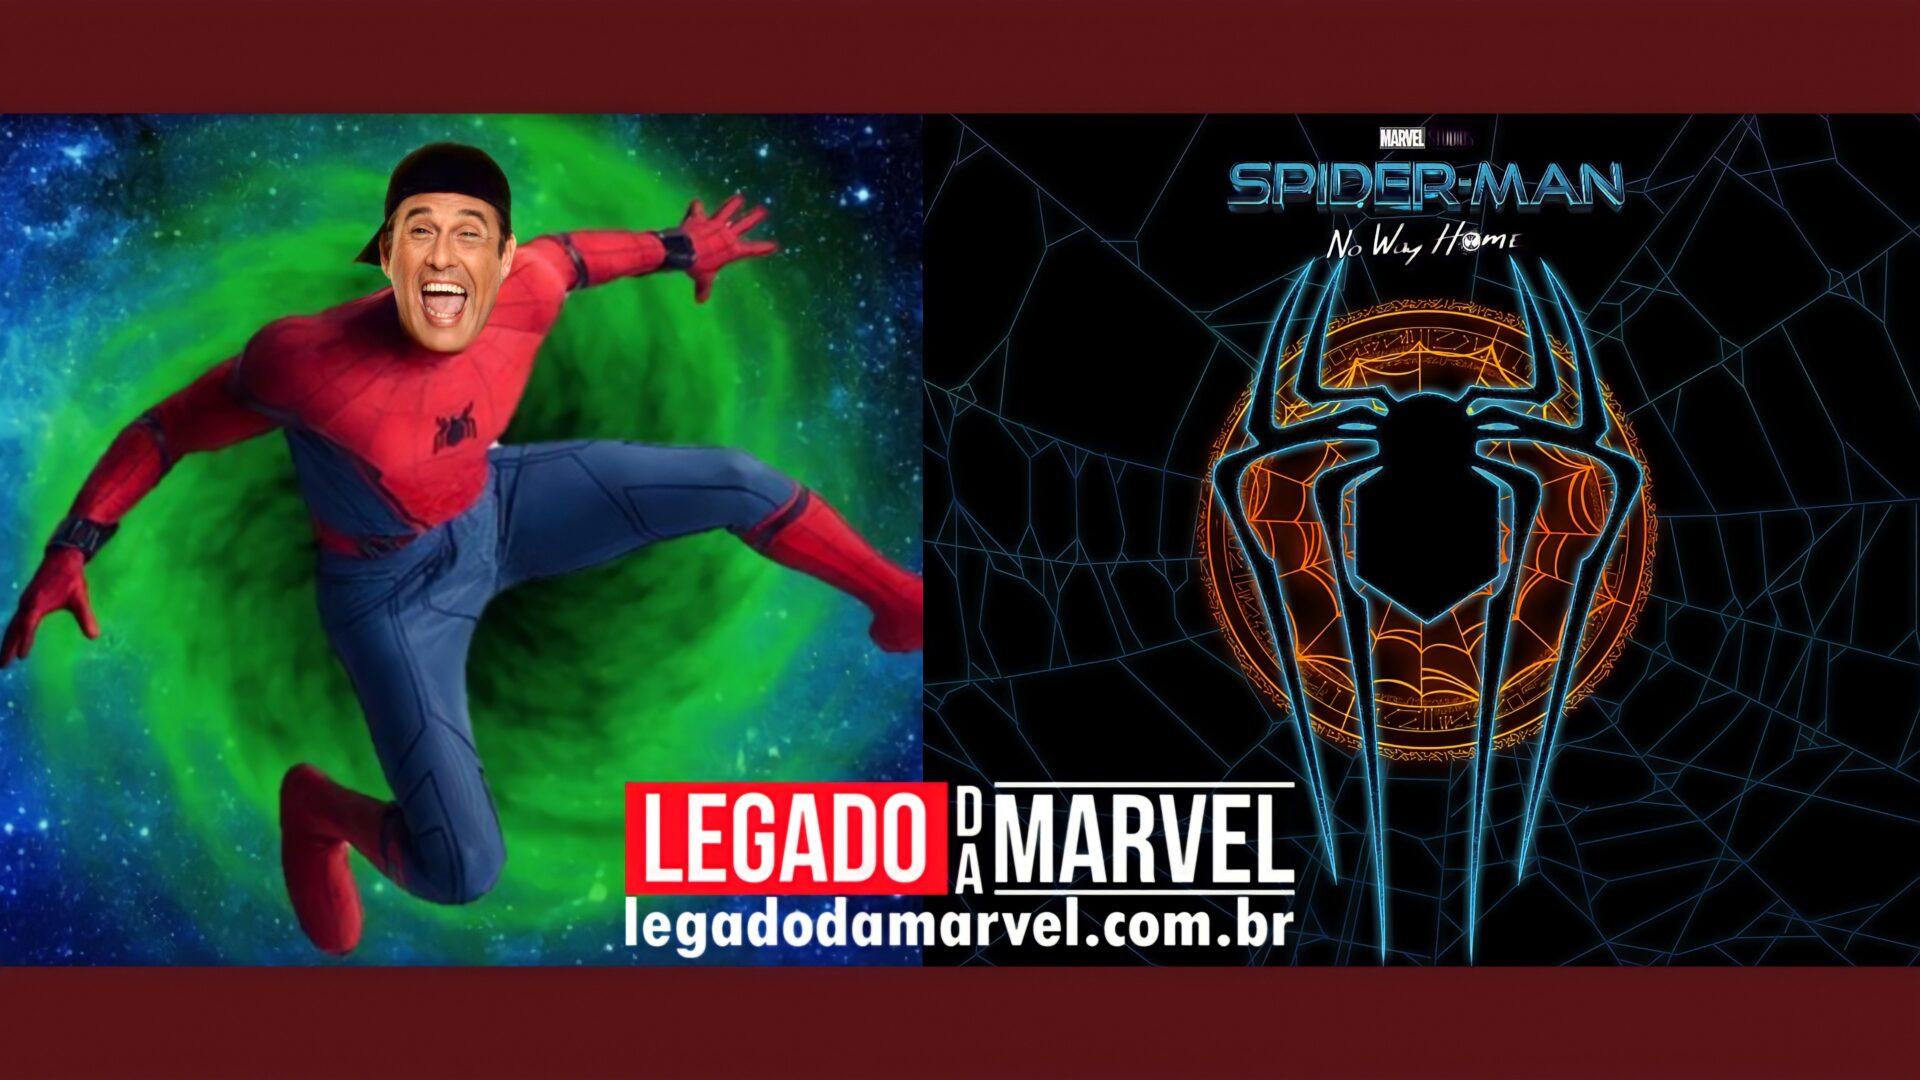  Brasileiro engana todo mundo no Twitter com arte de Homem-Aranha 3